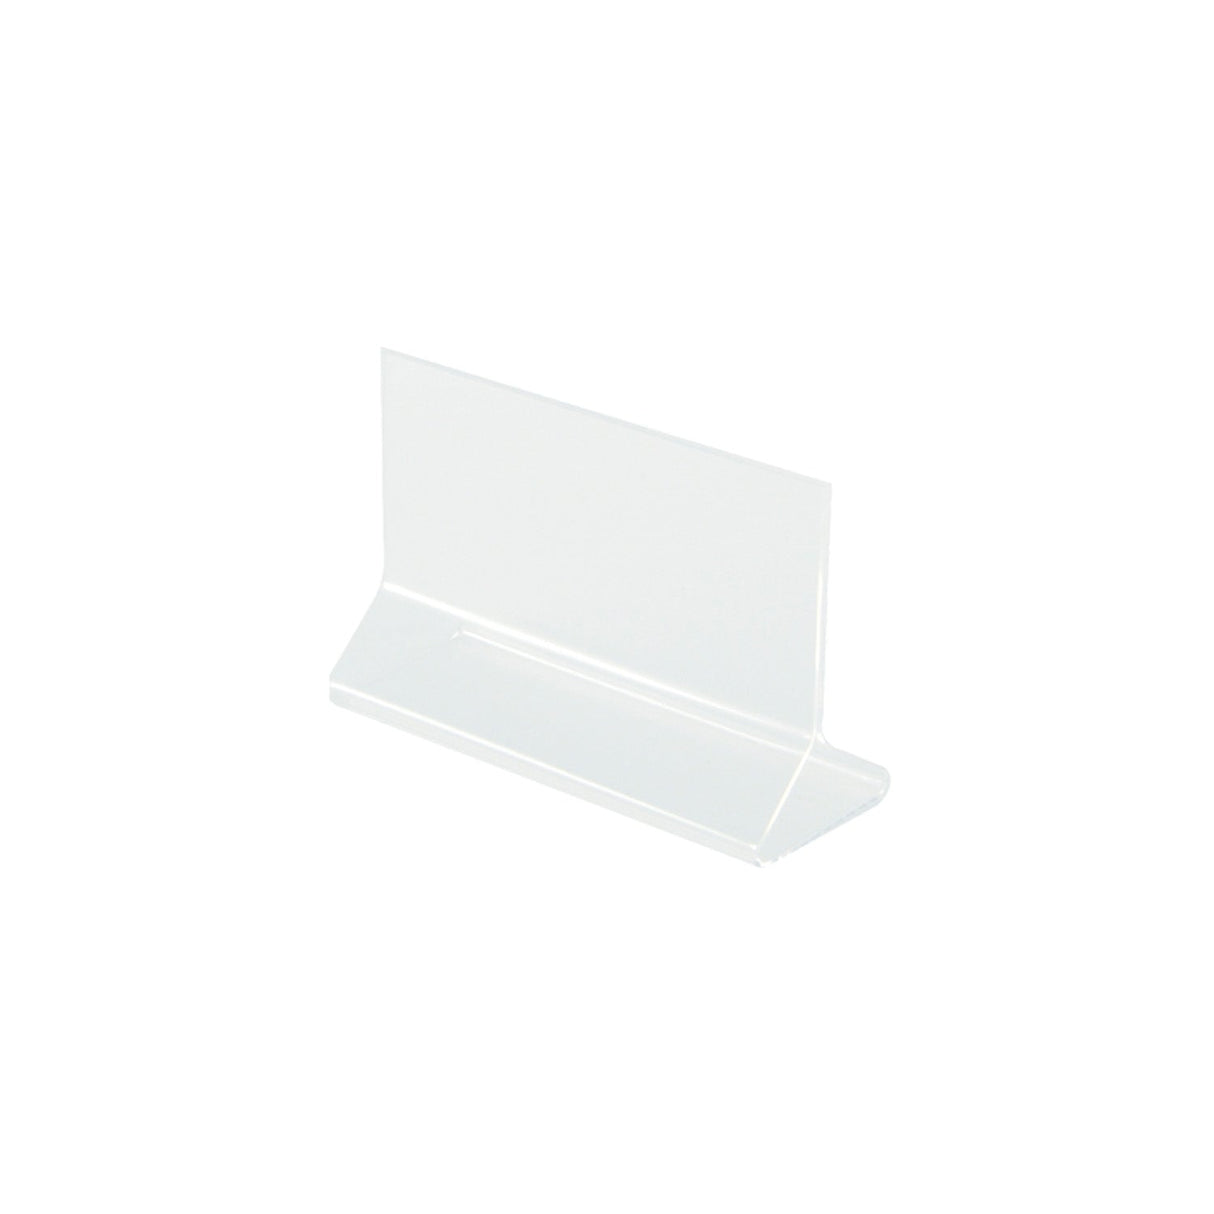 Card Holder Acrylic Tabletop 5-1/2x3-1/2"